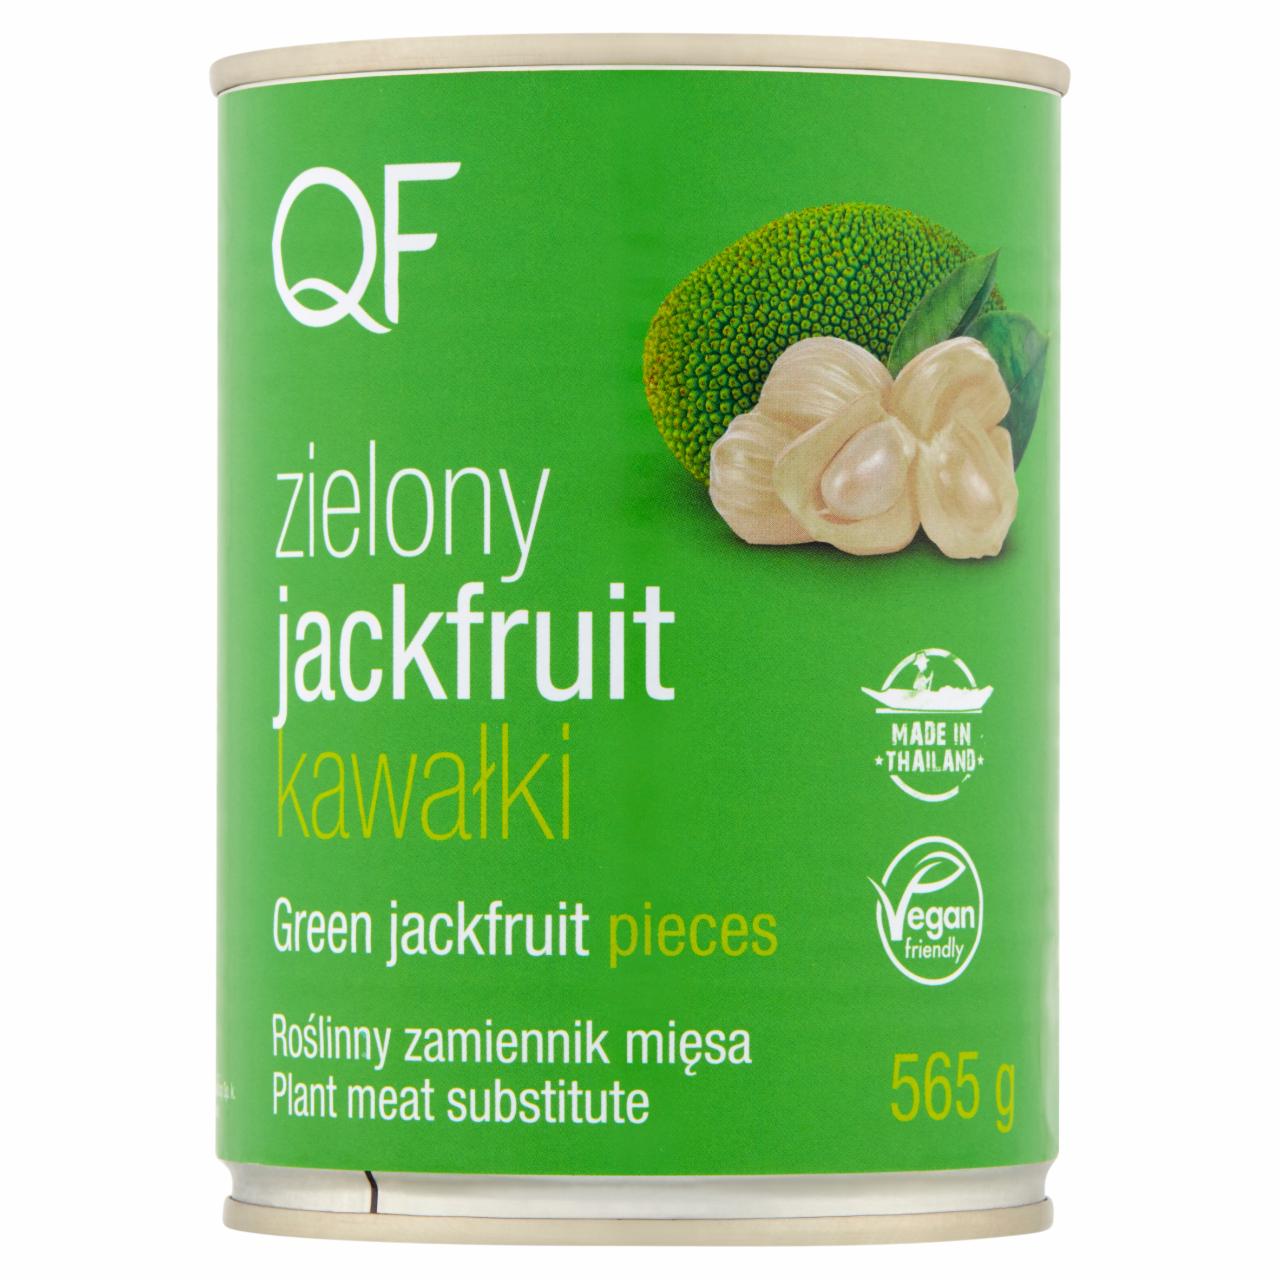 Zdjęcia - QF Zielony jackfruit kawałki 565 g